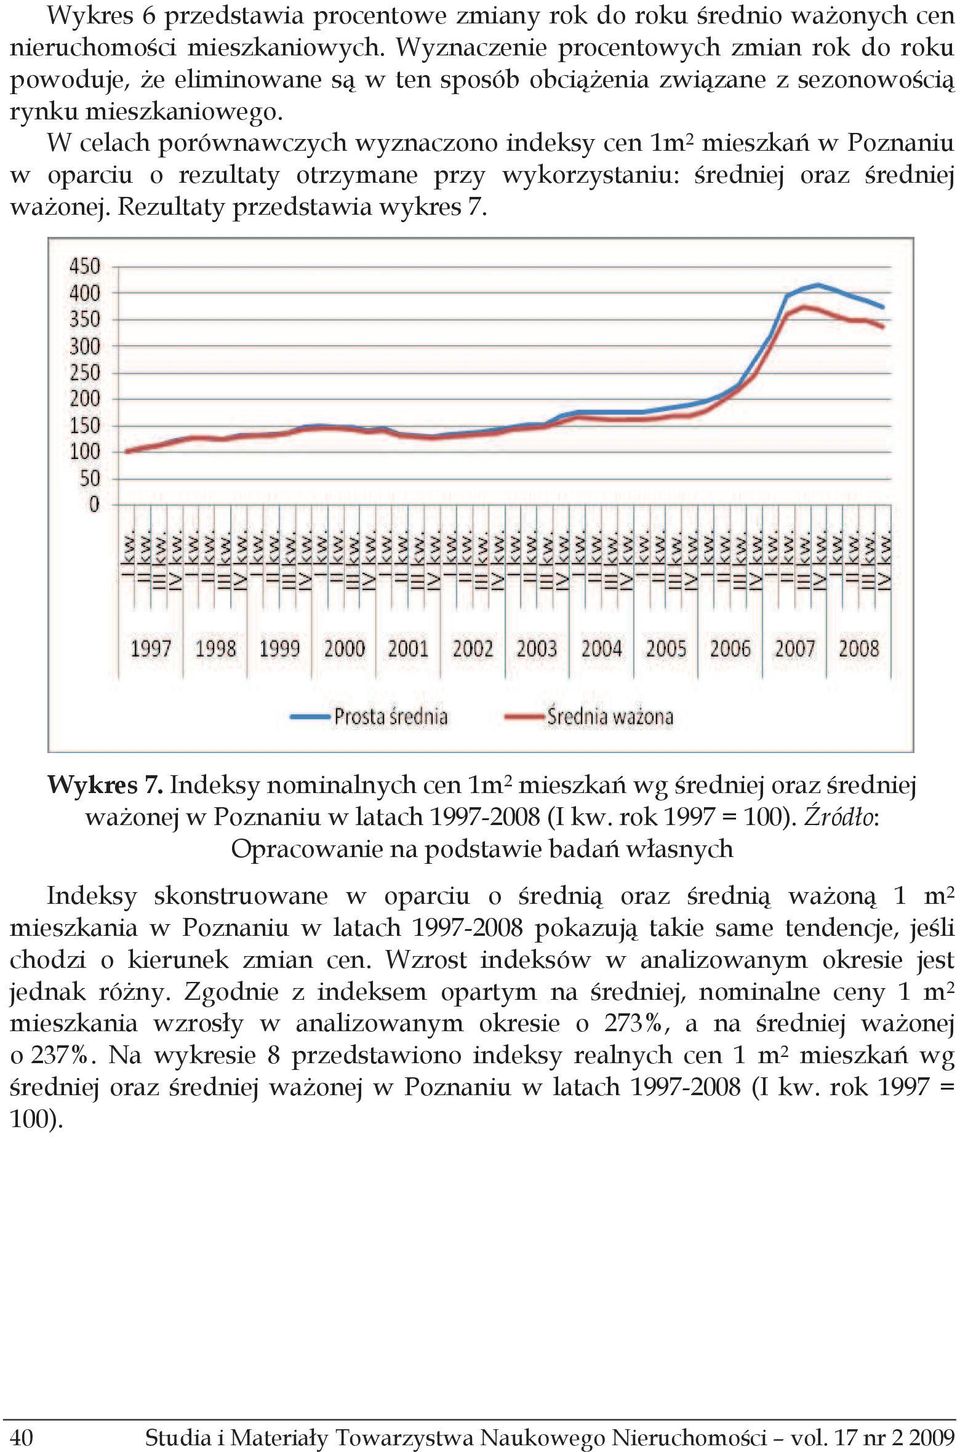 W celach porównawczych wyznaczono indeksy cen 1m 2 mieszka w Poznaniu w oparciu o rezultaty otrzymane przy wykorzystaniu: redniej oraz redniej waonej. Rezultaty przedstawia wykres 7. Wykres 7.